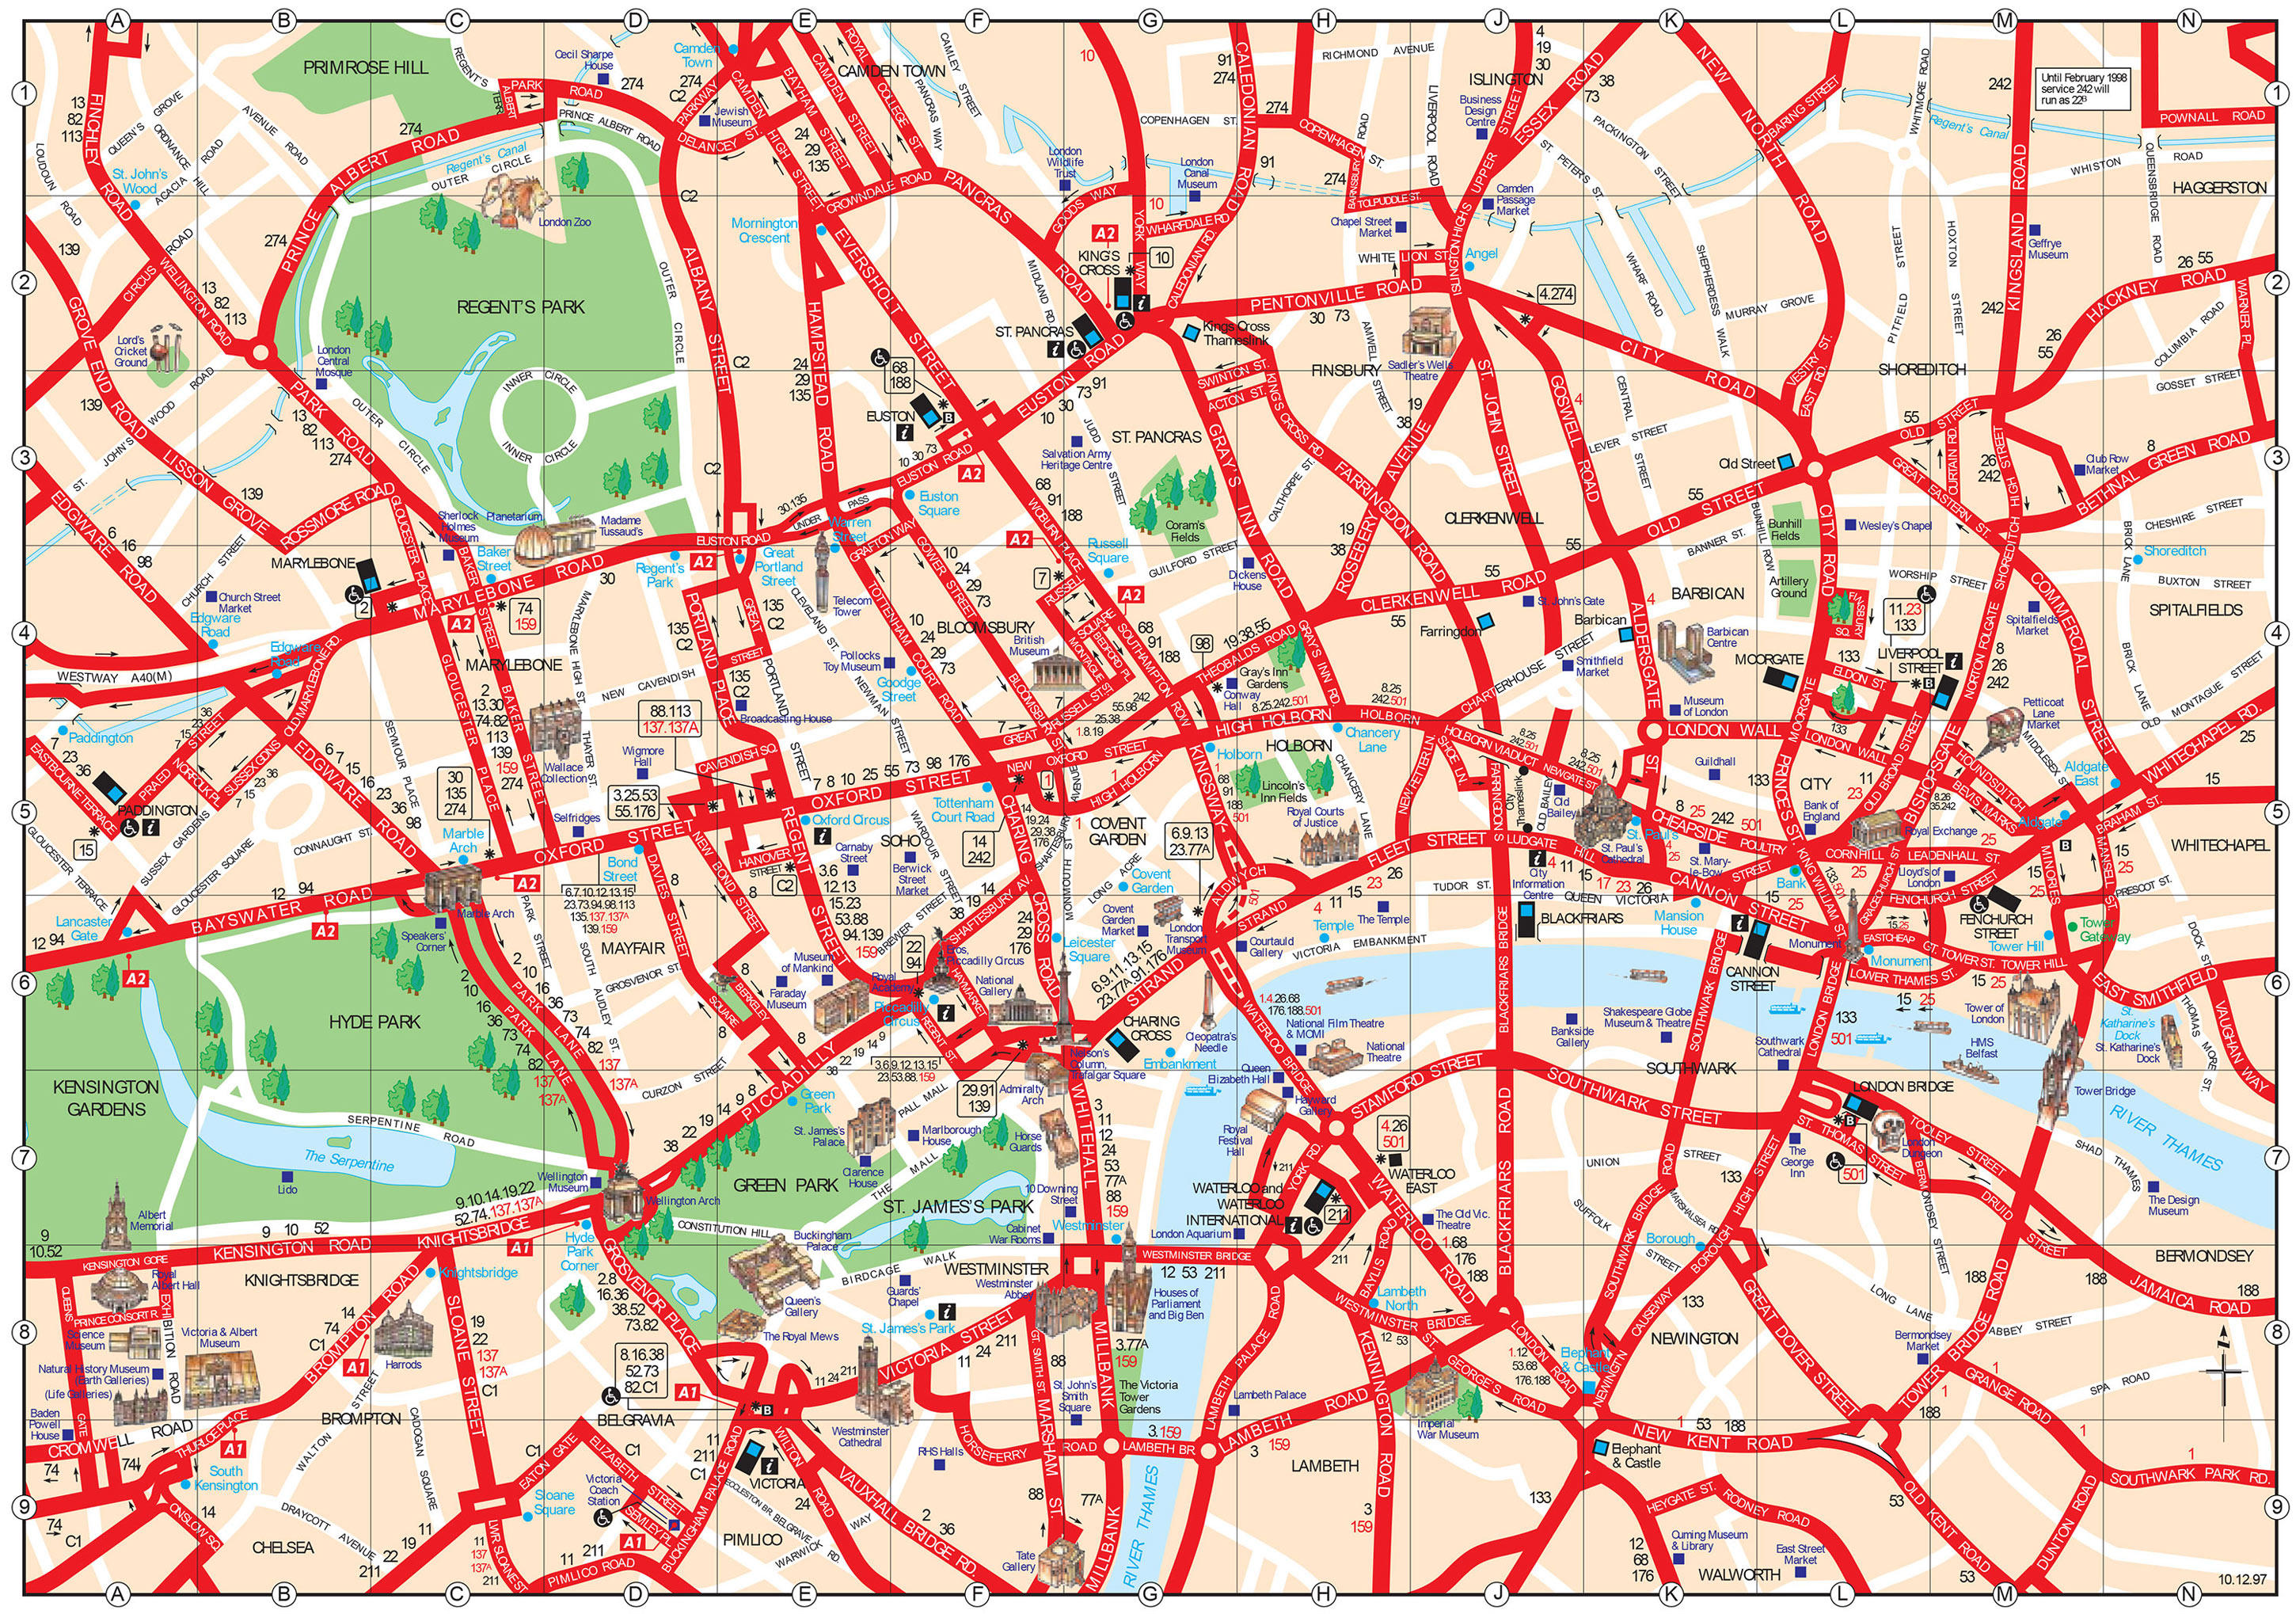 Touristischen karte von London : Sehenswürdigkeiten und Touren